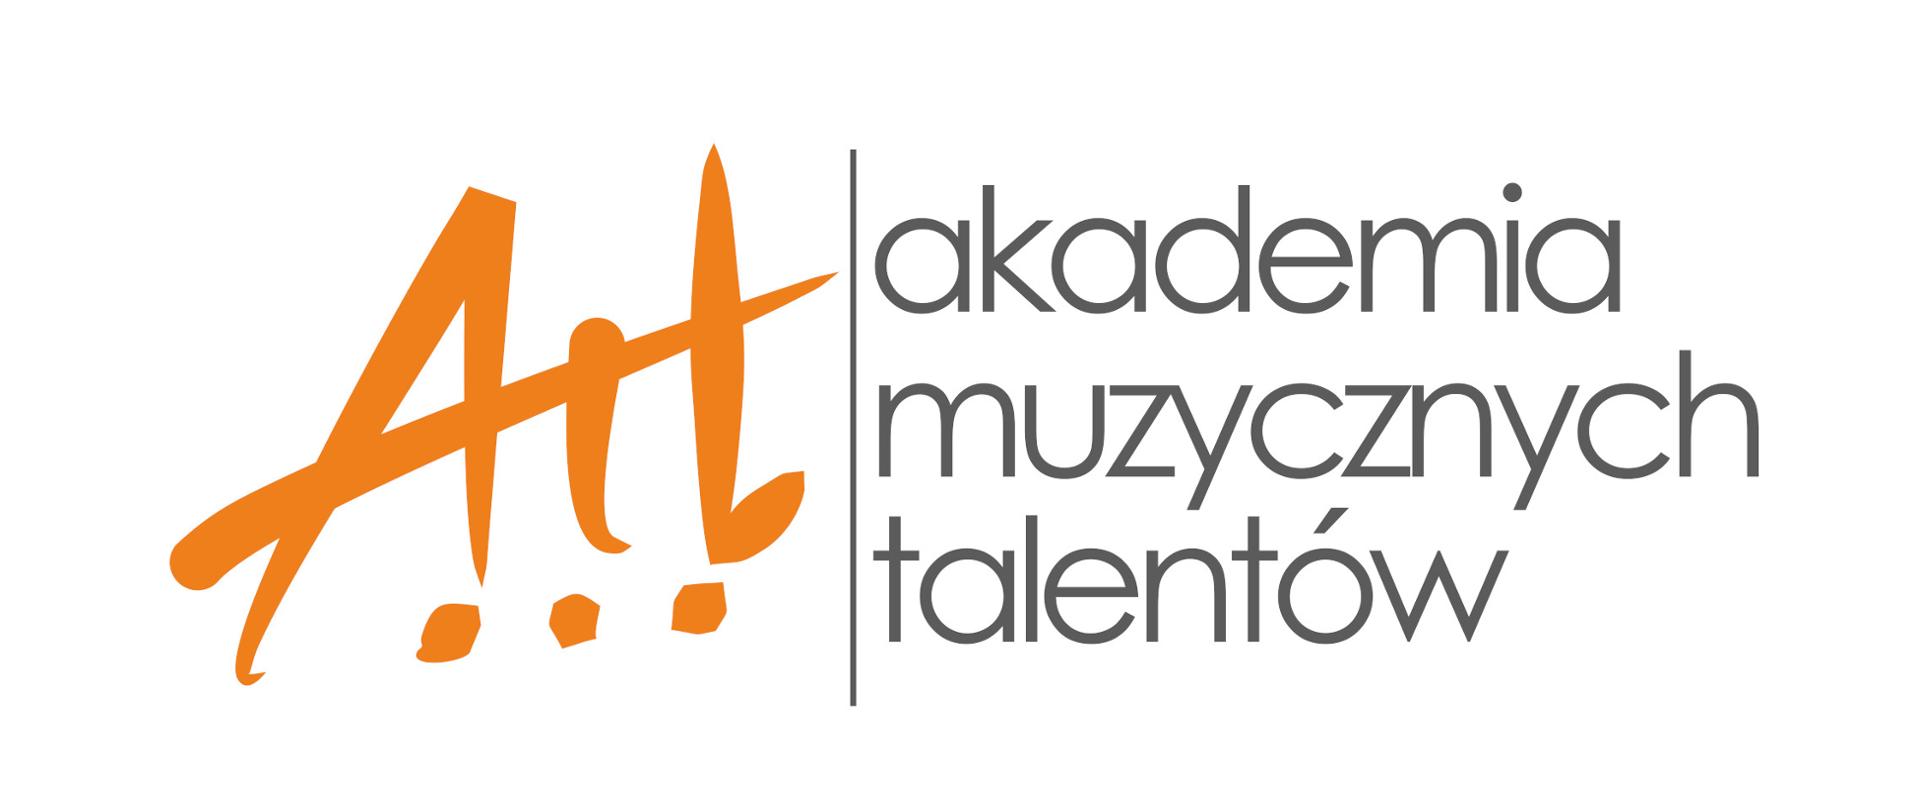 Biała grafika z pomarańczowym napisem Amt stylizowanym na pismo odręczne. Z prawej strony grafiki rozwinięcie skrótu - szary napis "akademia muzycznych talentów".